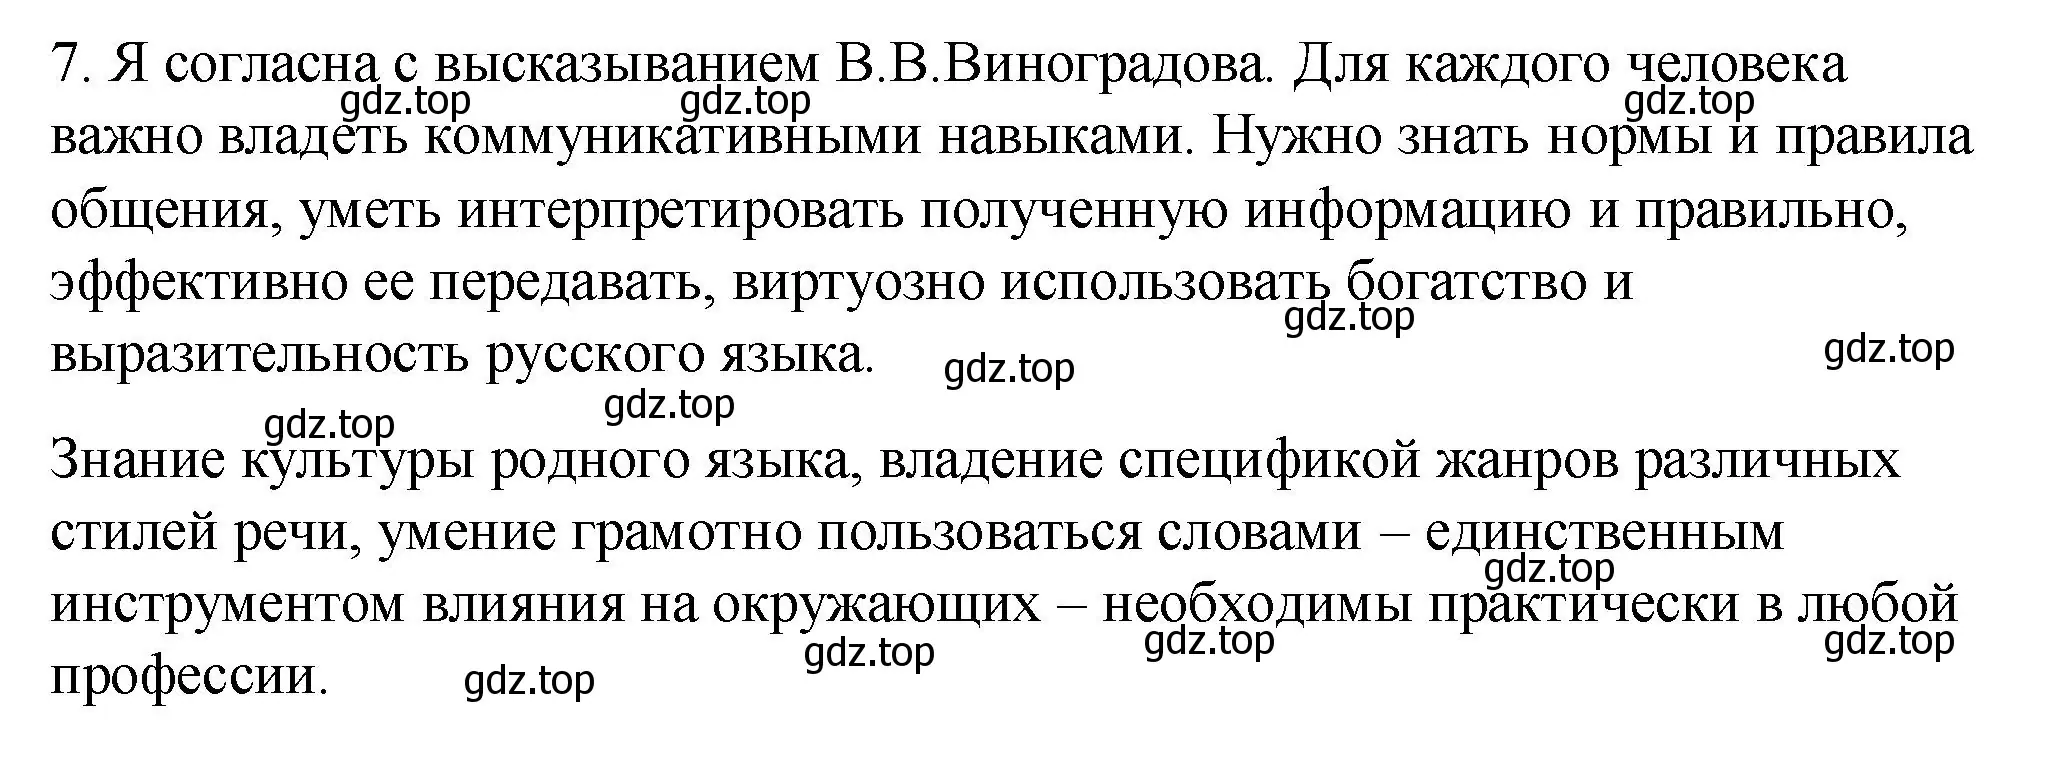 Решение номер 7 (страница 263) гдз по русскому языку 10-11 класс Гольцова, Шамшин, учебник 2 часть